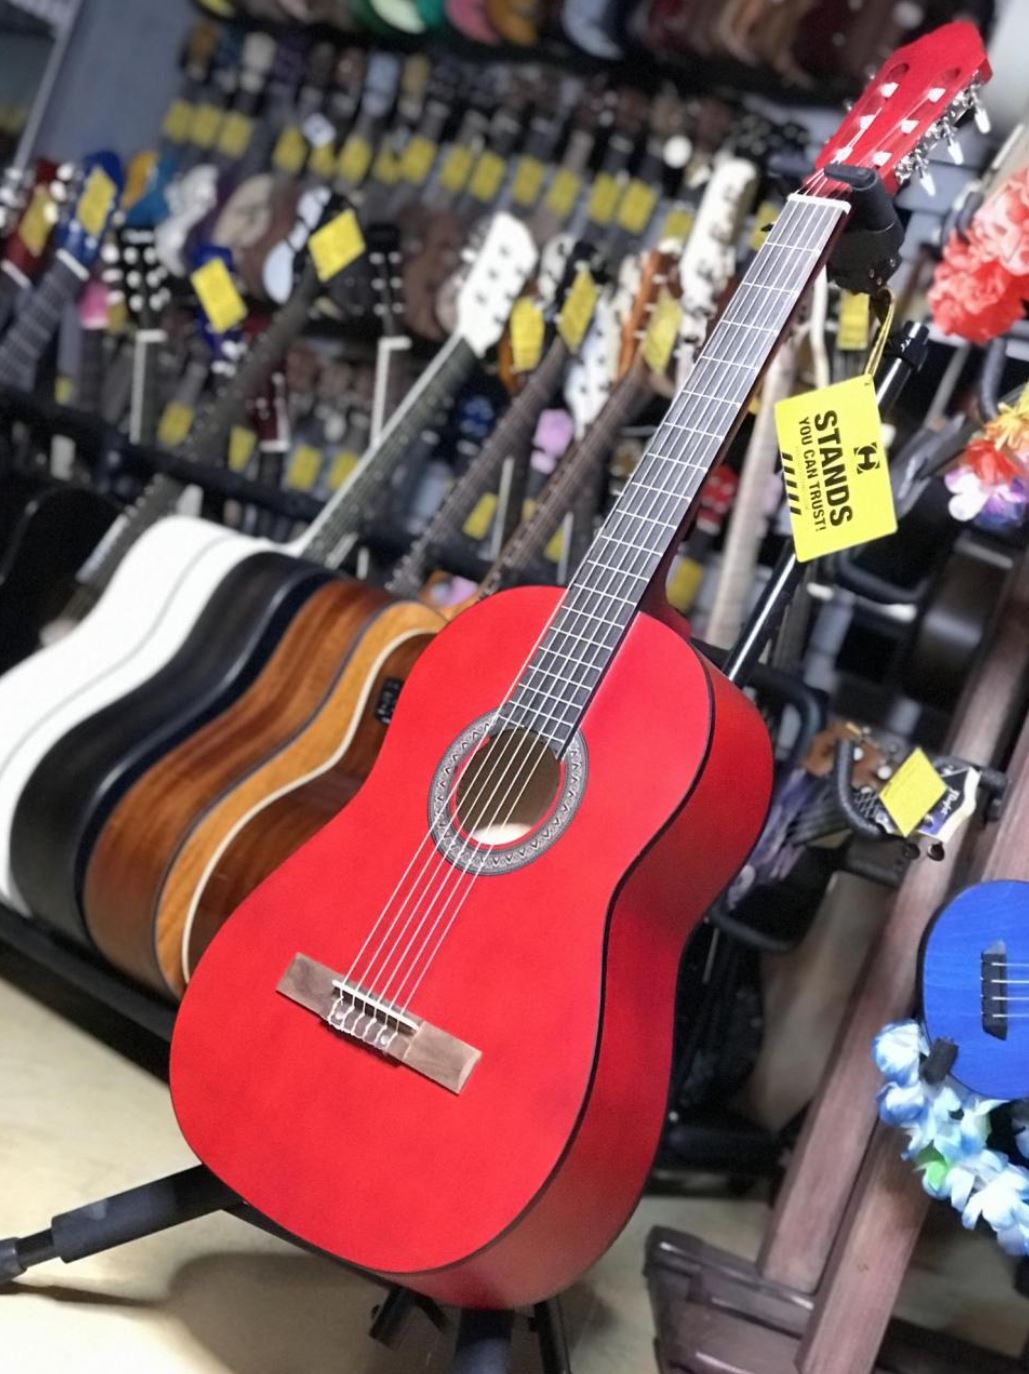 Fabio KM3911 RDS классическая гитара шестиструнная полноразмерная 4/4, цвет темно красный матовый лак от музыкального магазина МОРОЗ МЬЮЗИК